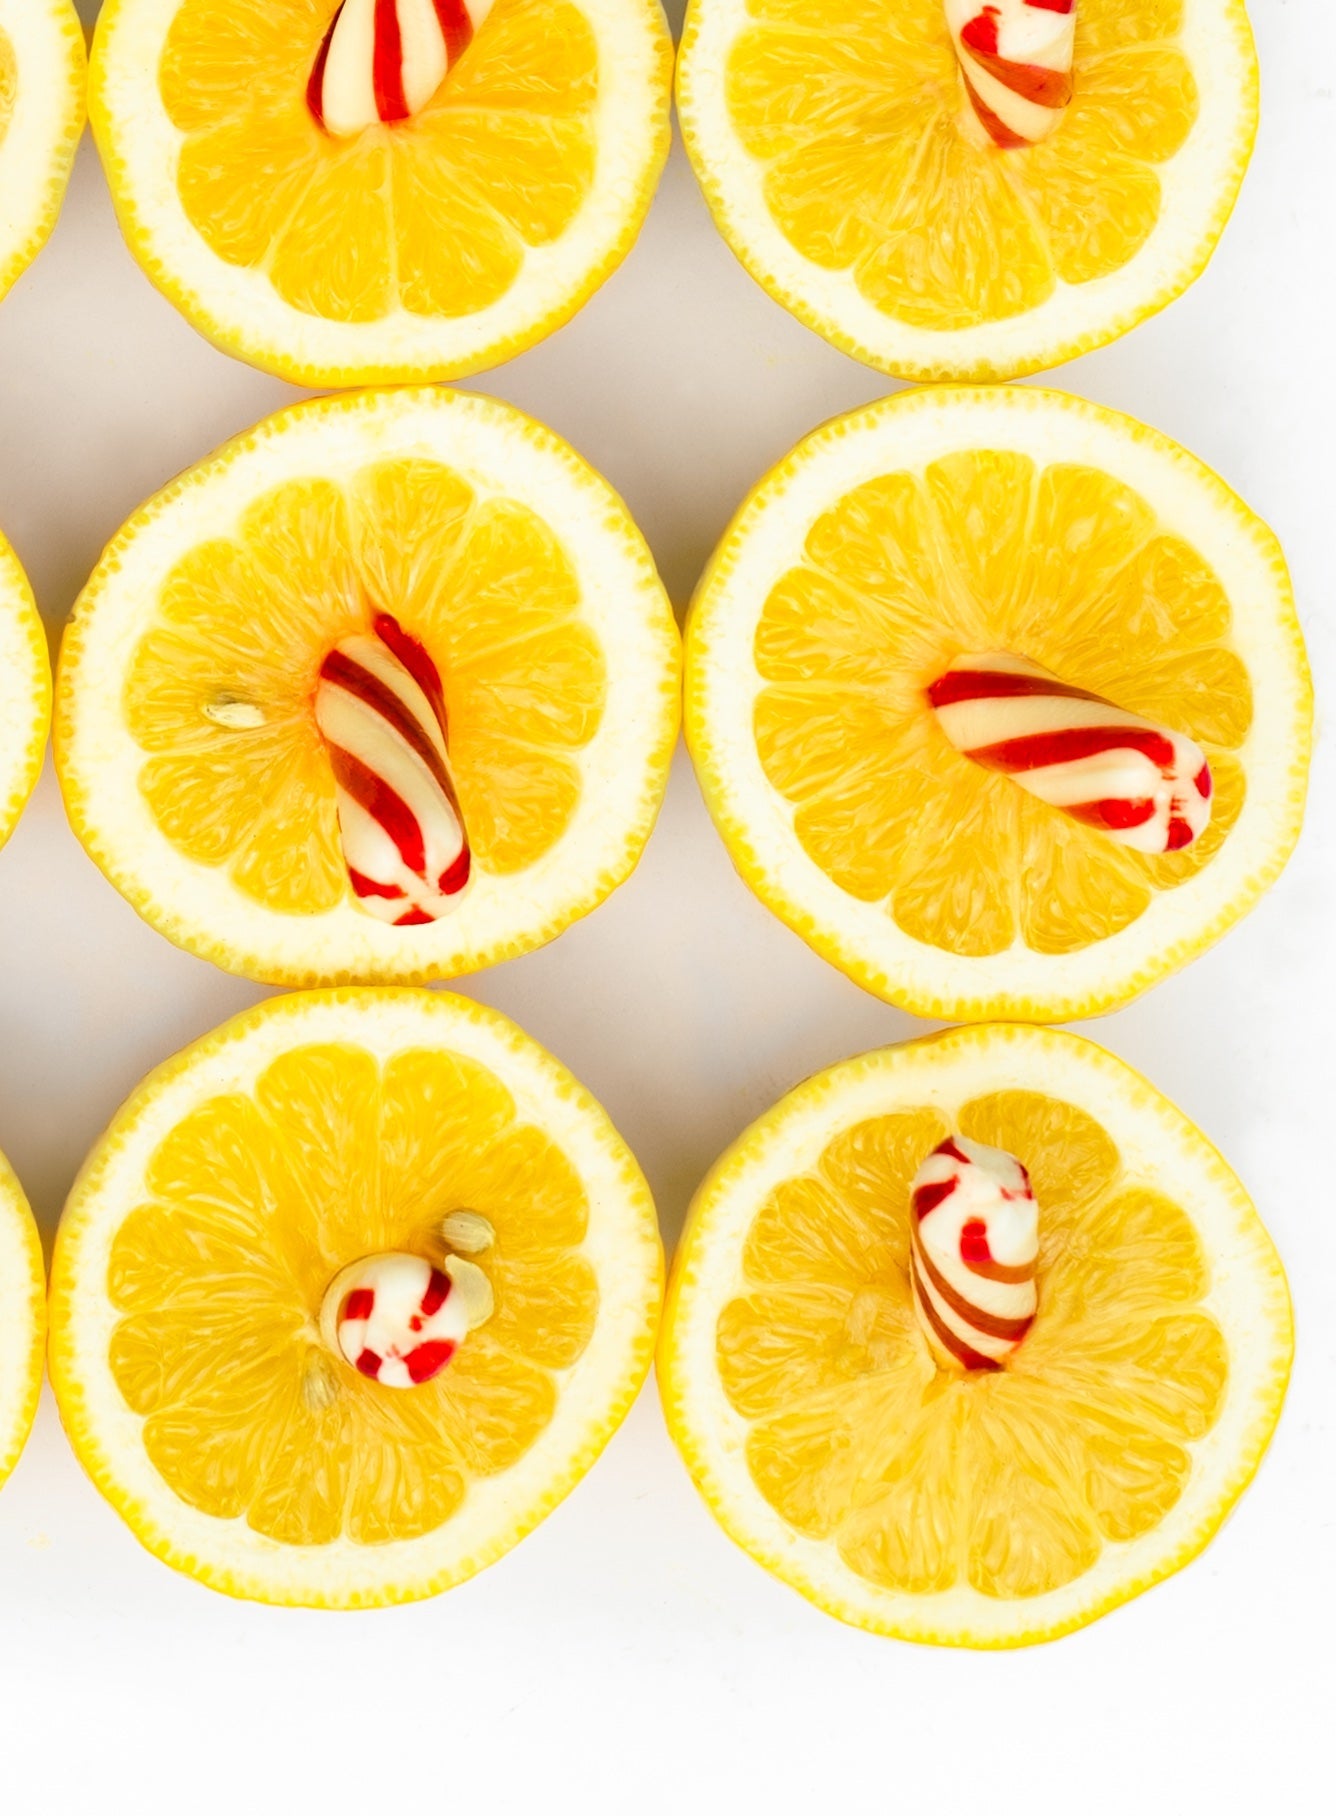 Lemons - Squished